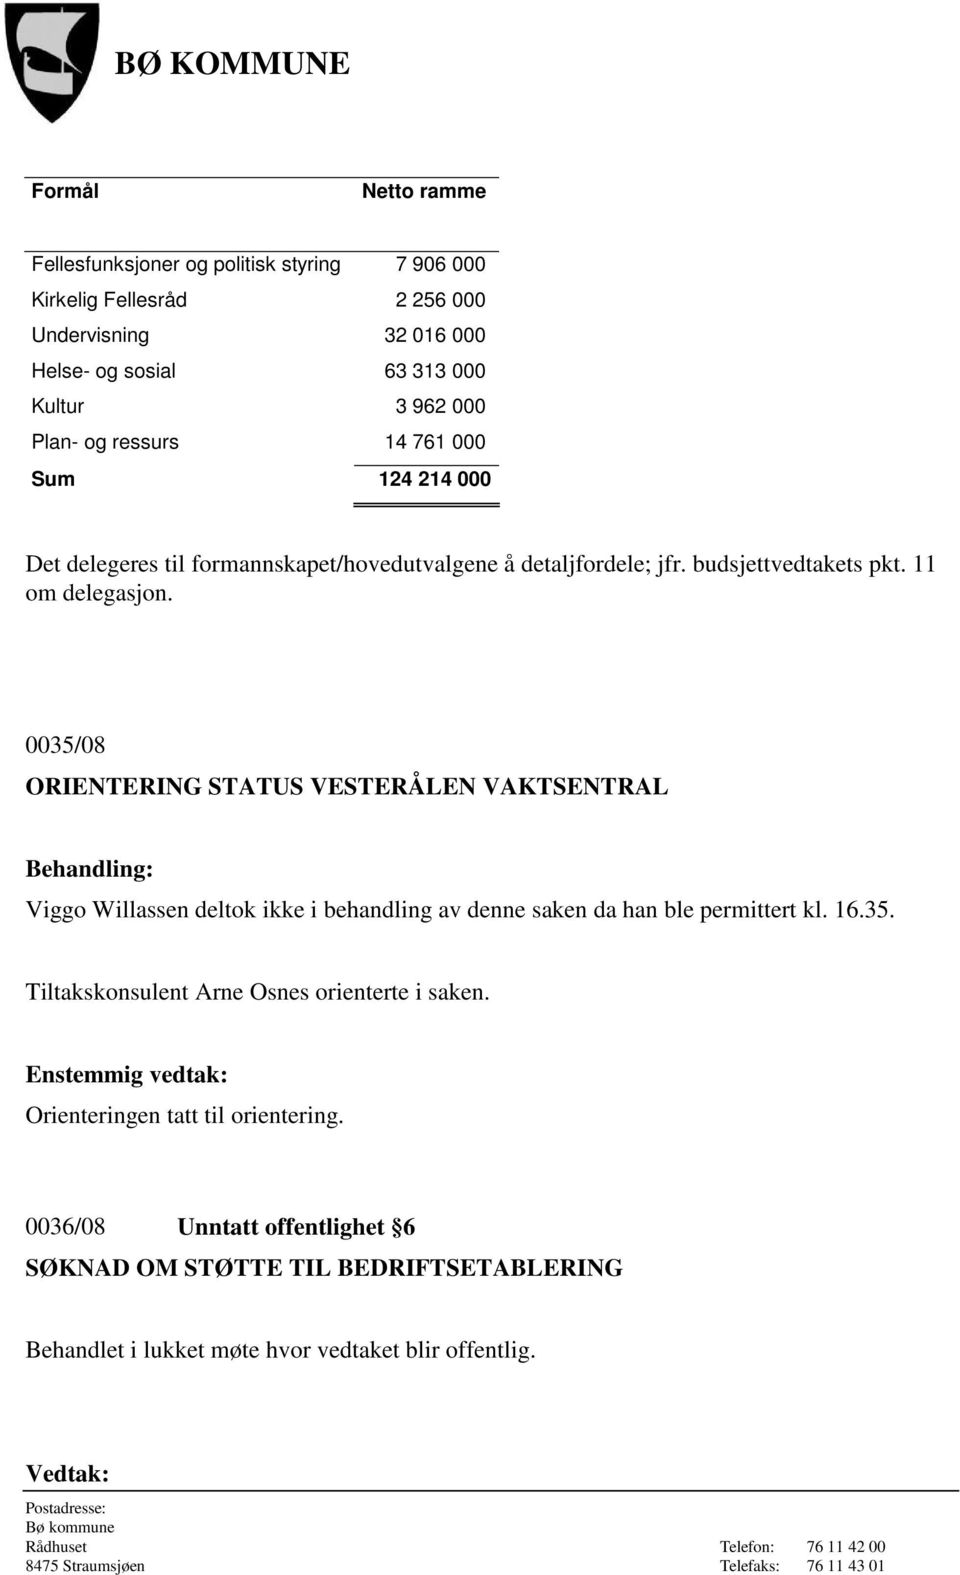 0035/08 ORIENTERING STATUS VESTERÅLEN VAKTSENTRAL Viggo Willassen deltok ikke i behandling av denne saken da han ble permittert kl. 16.35. Tiltakskonsulent Arne Osnes orienterte i saken.